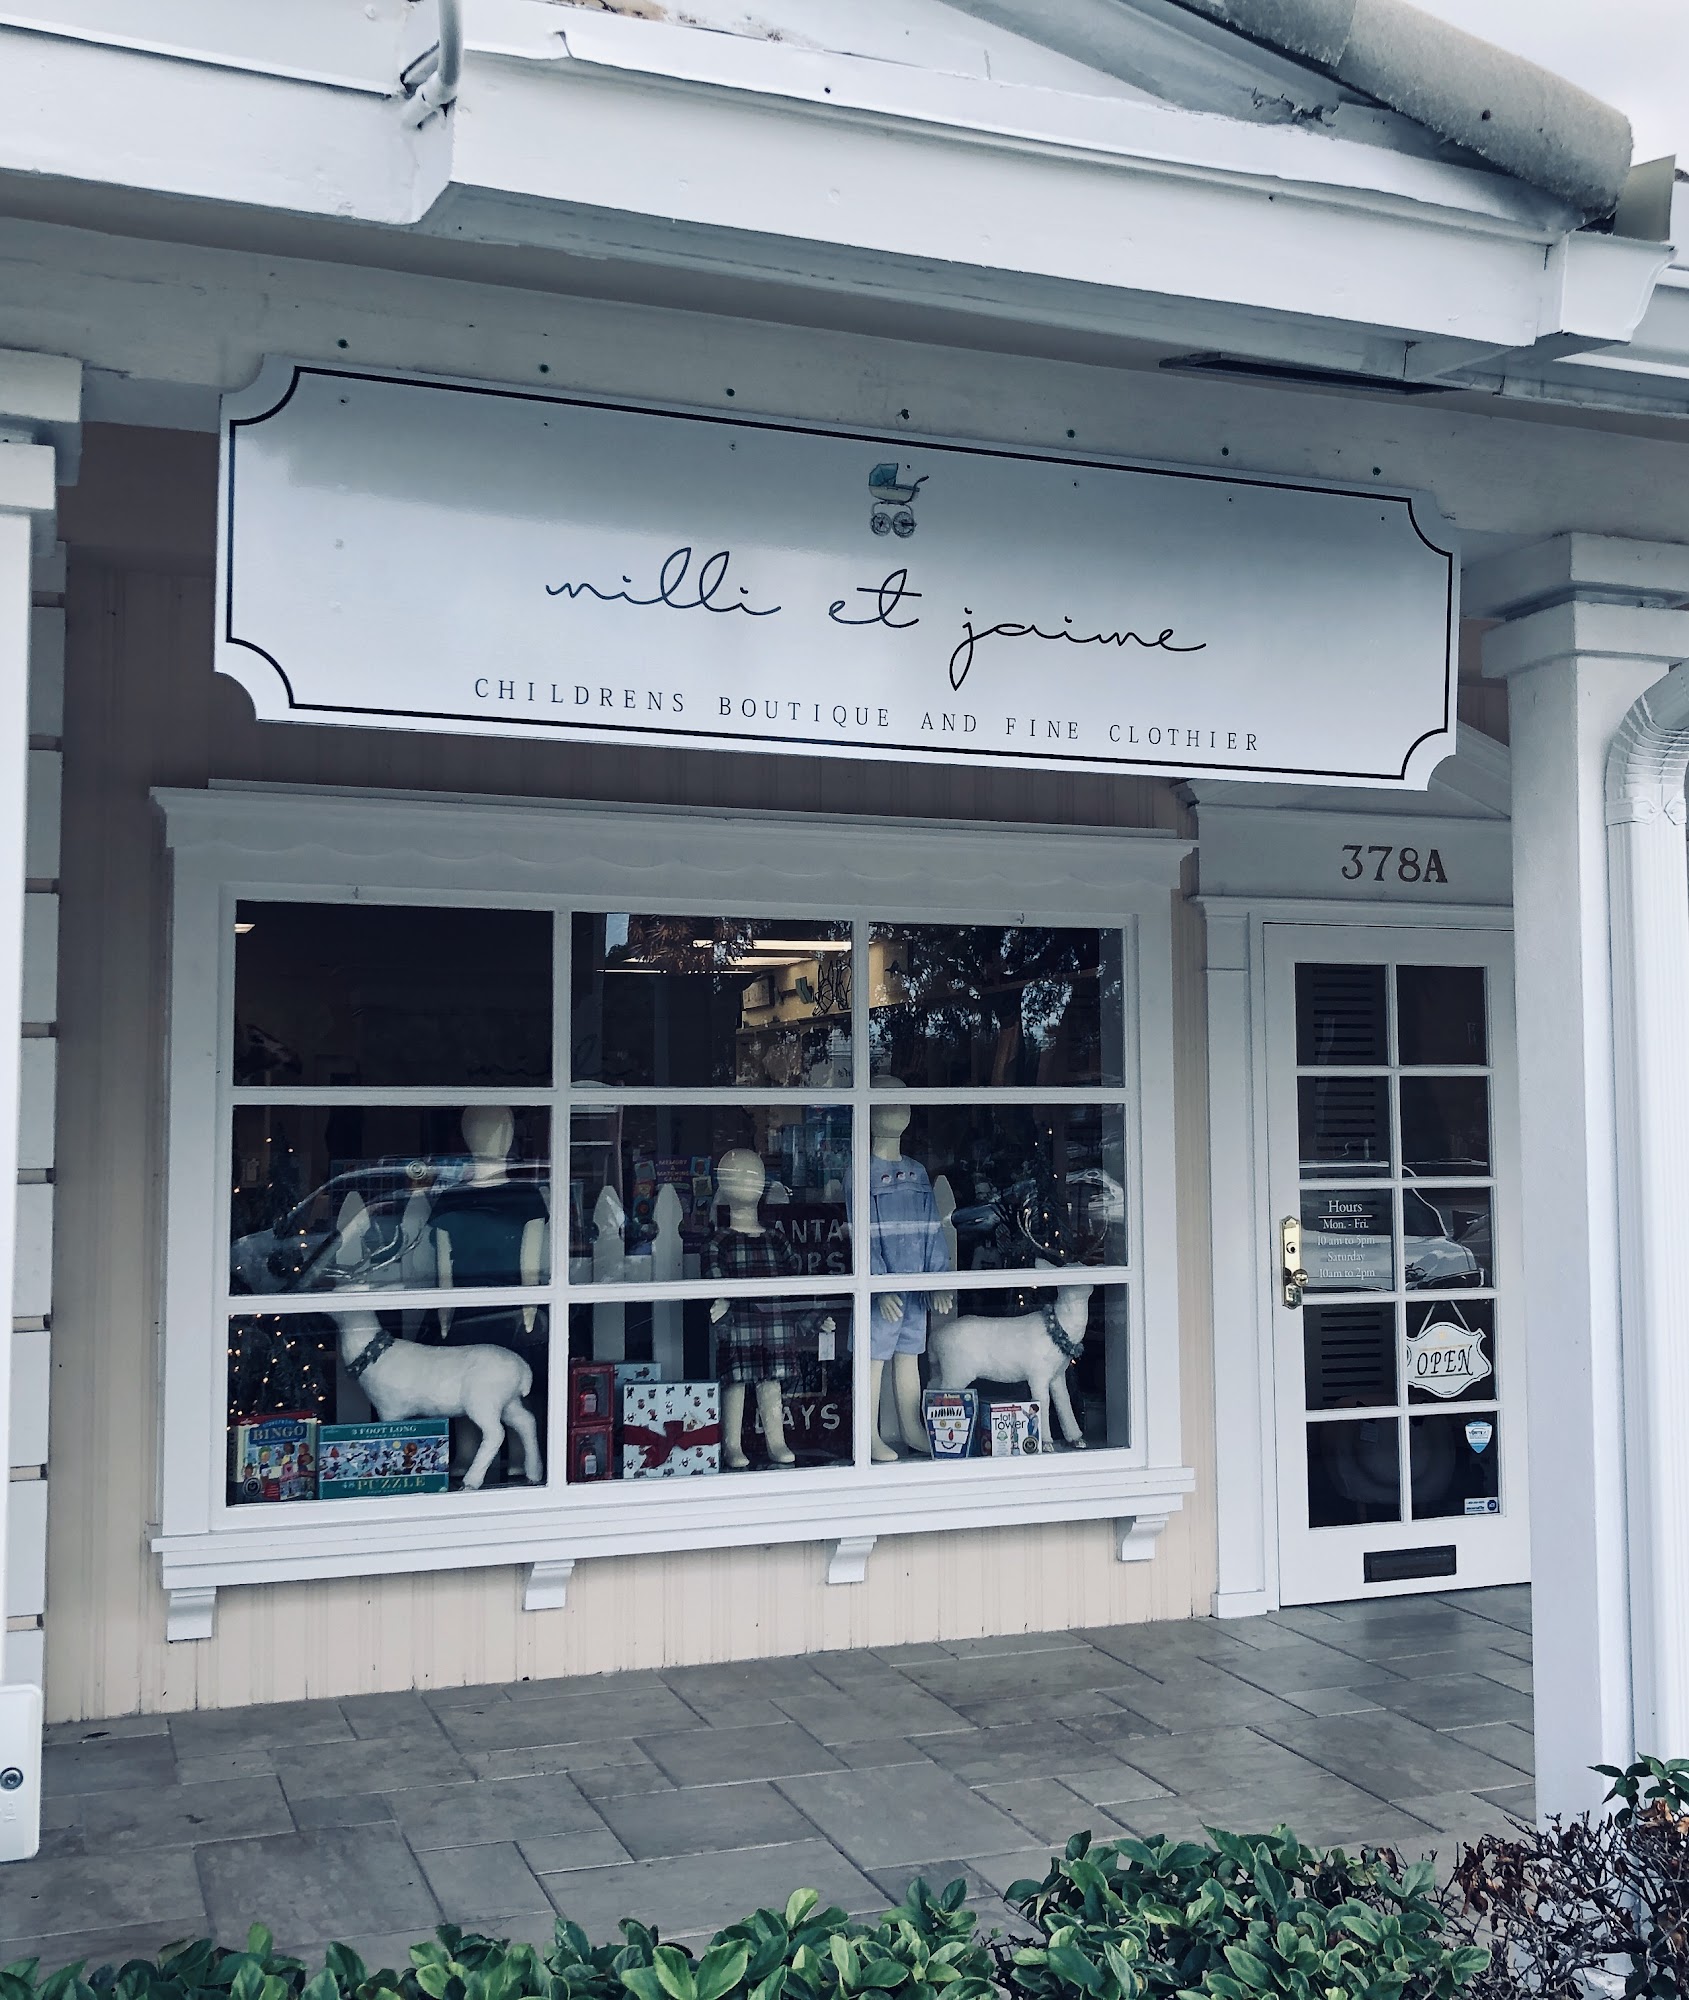 Milli et Jaime Children’s Boutique and Fine Clothier